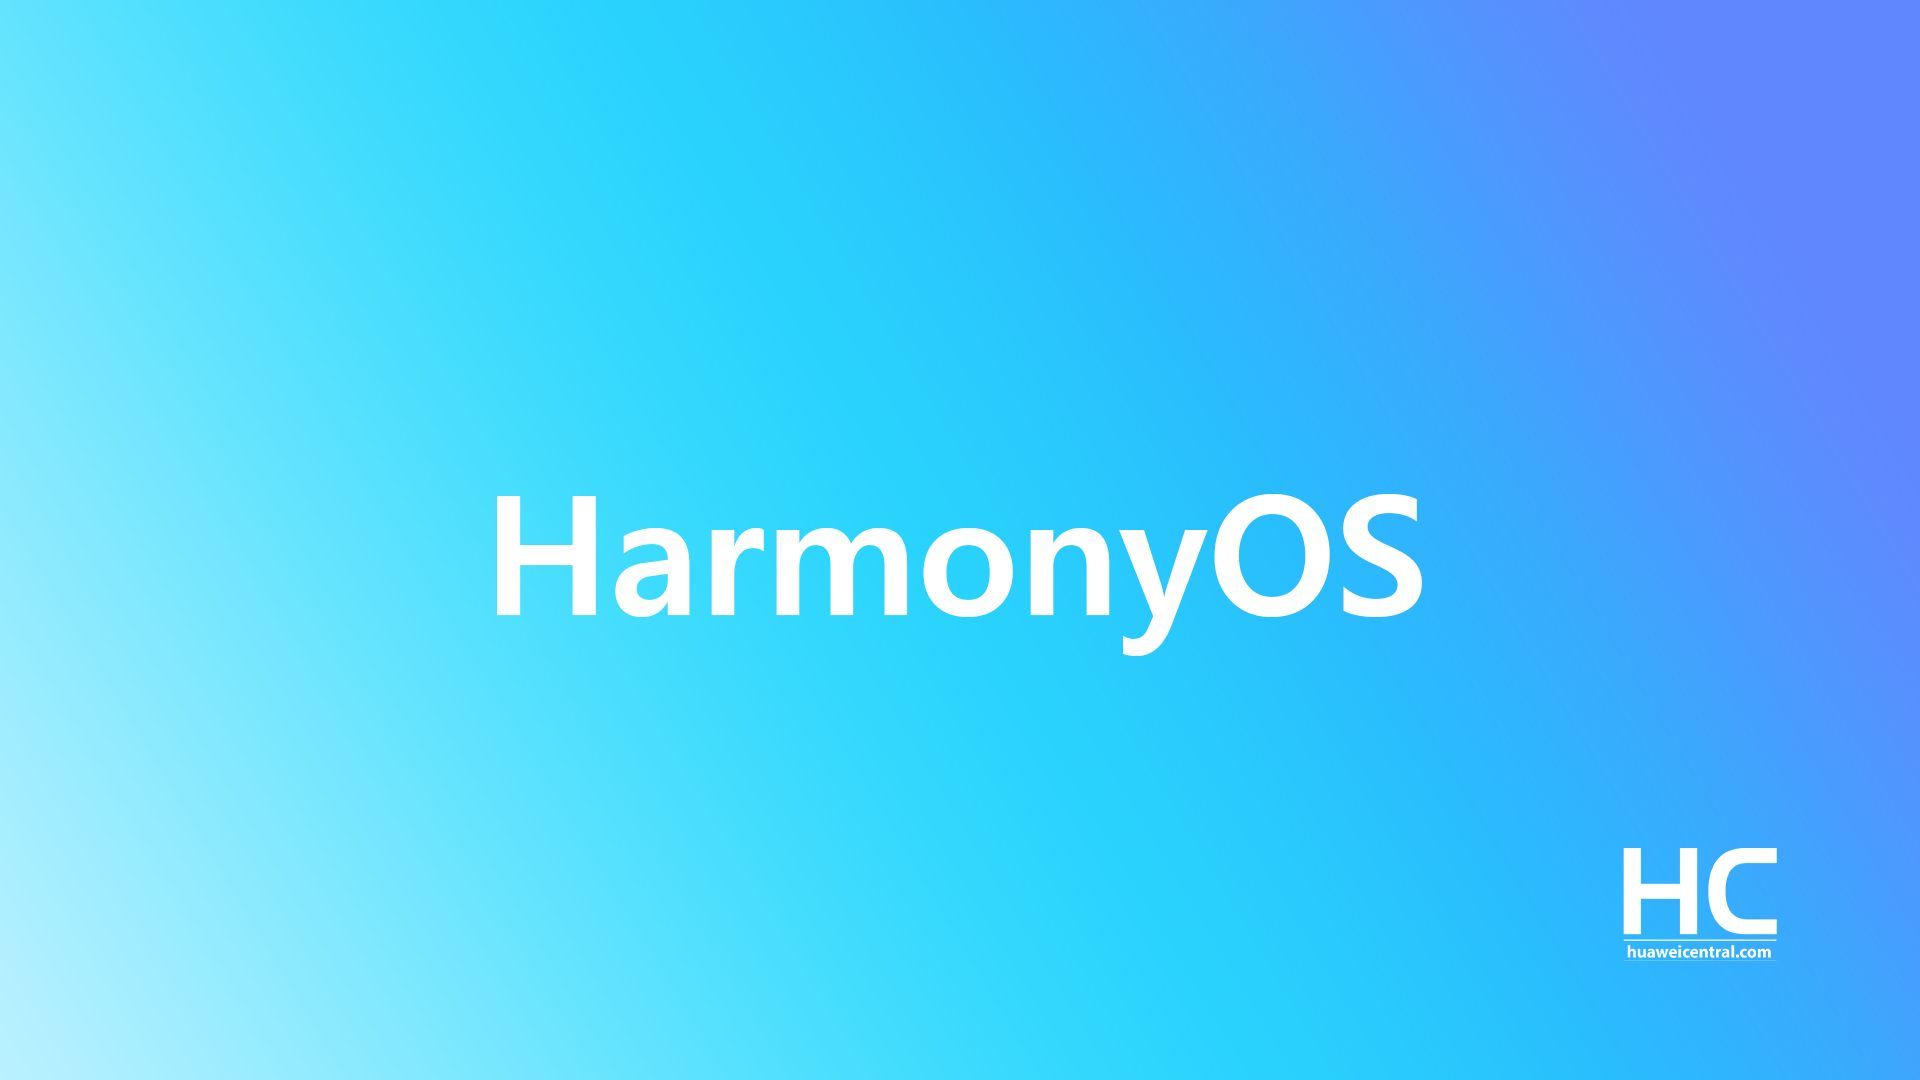 HarmonyOS скоро появится на смарт-часах и ноутбуках Huawei, говорит глобальный менеджер по продукту